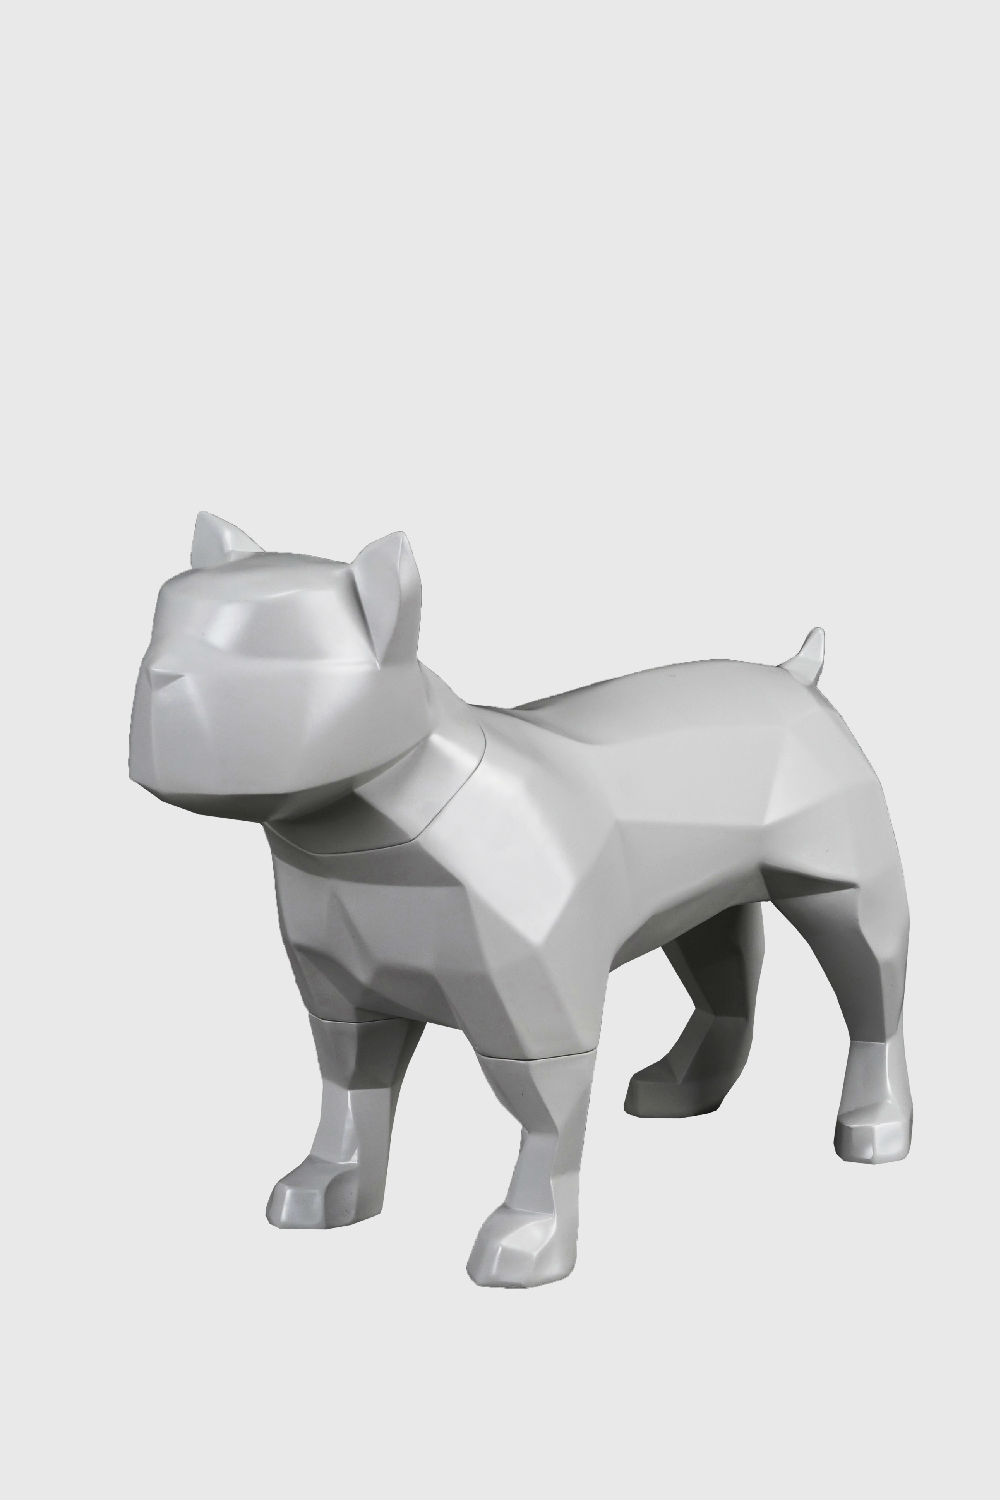 卡通仿真动物狗模型展示道具-bulldog